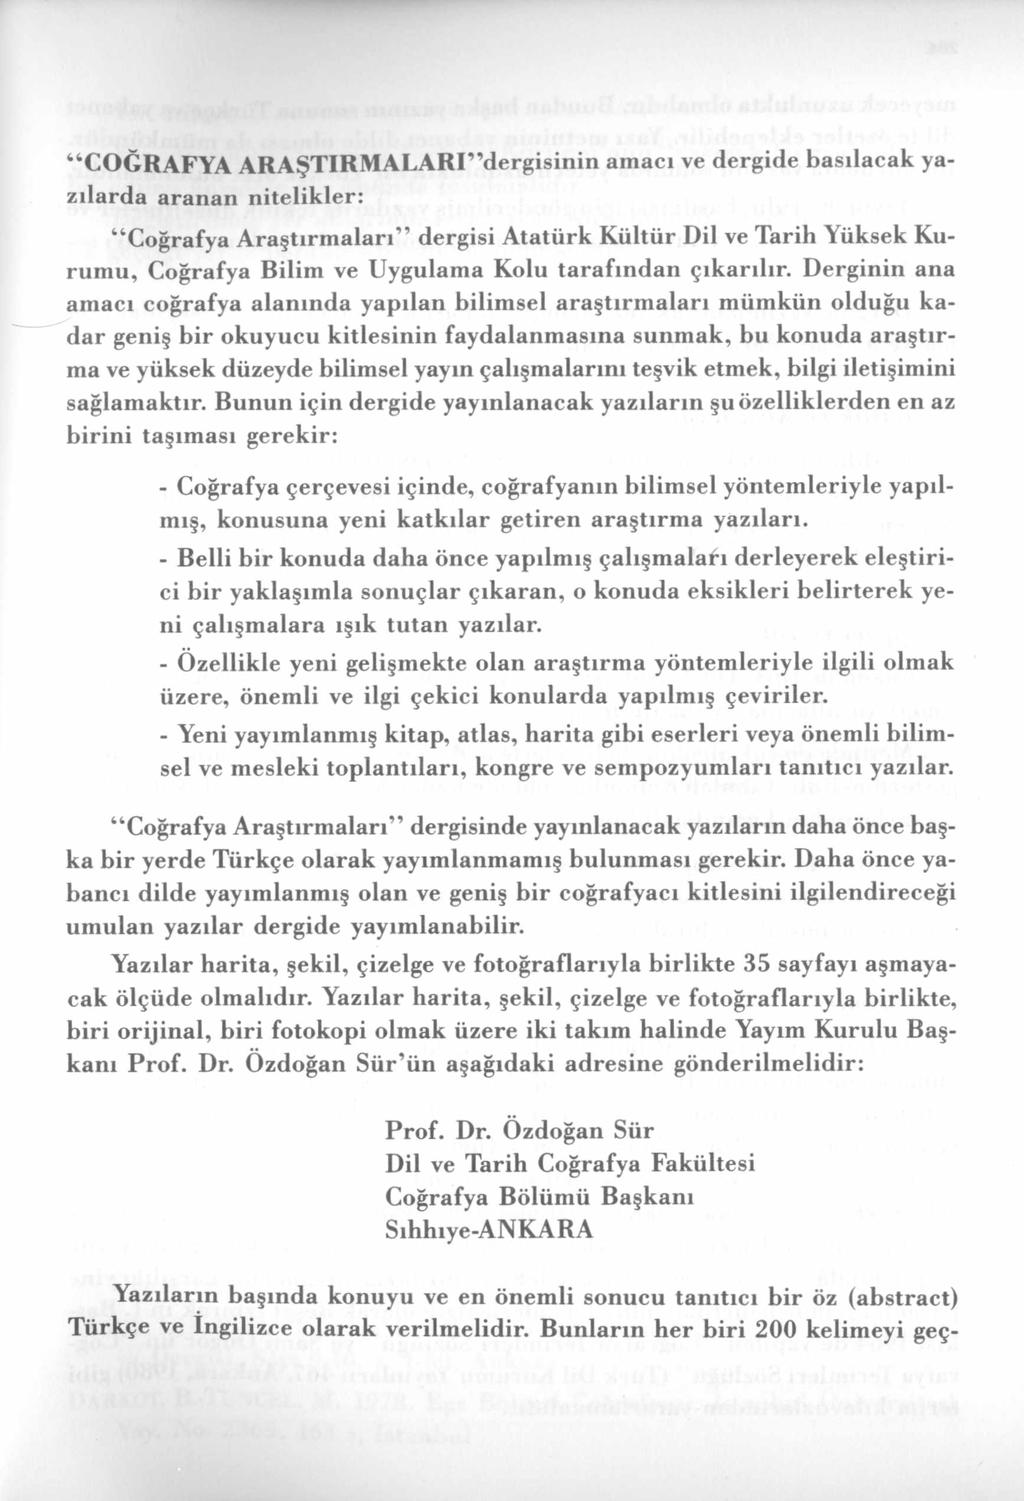 C O Ğ R A F Y A A R A Ş T IR M A L A R I dergisinin am acı ve dergide basılacak yazılarda aranan nitelikler: Coğrafya Araştırmaları dergisi Atatürk Kültür Dil ve Tarih Yüksek Kurumu, Coğrafya Bilim